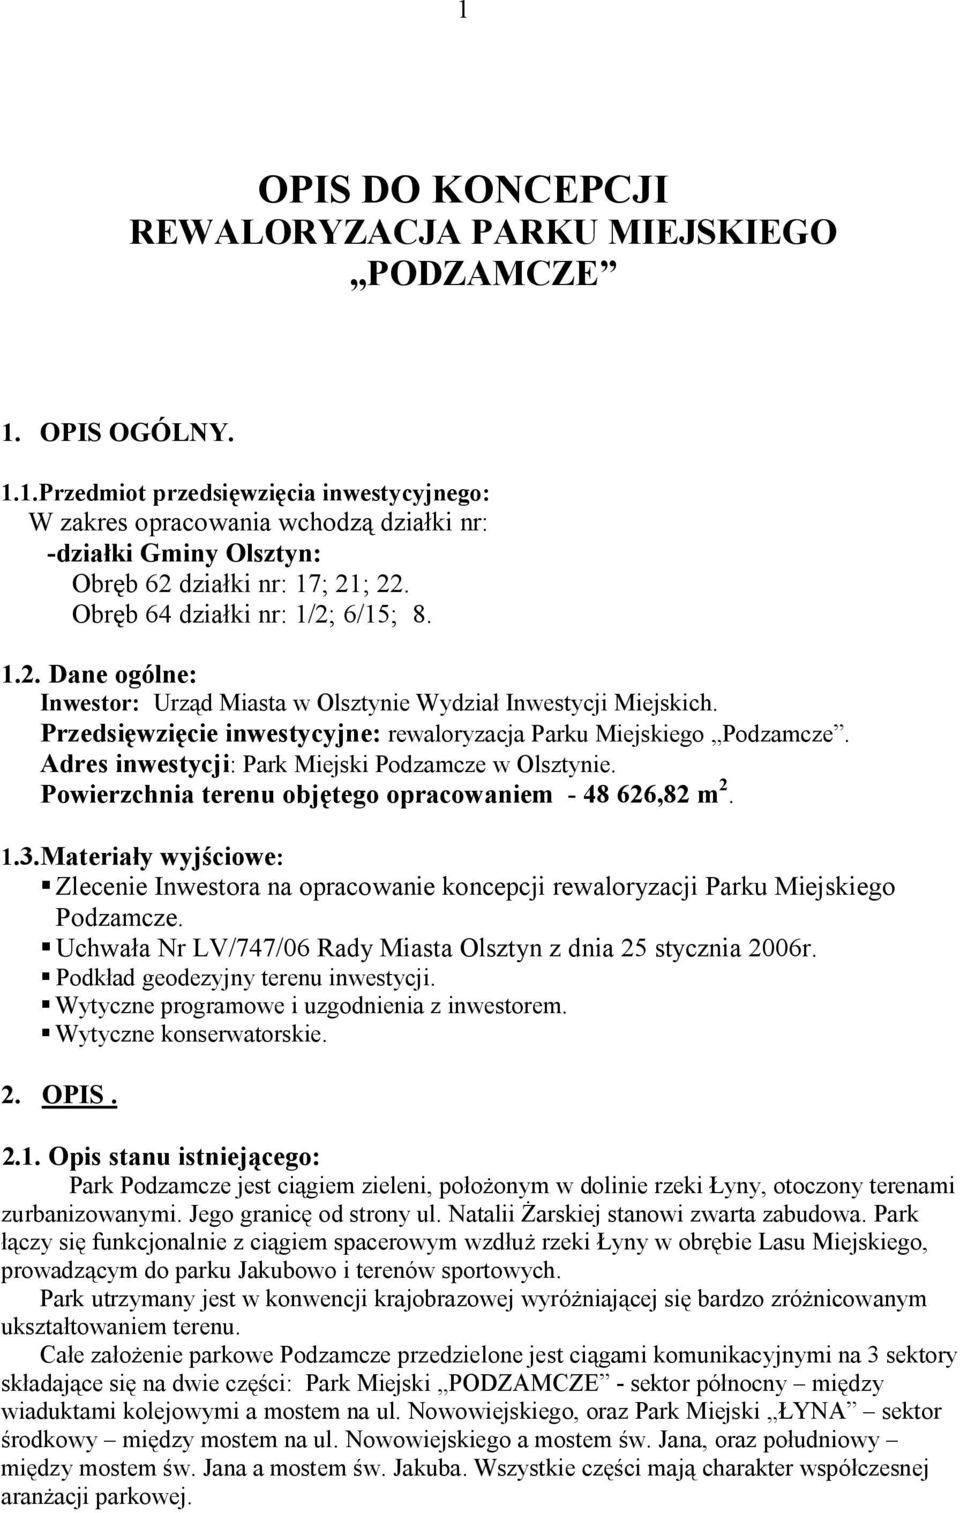 Adres inwestycji: Park Miejski Podzamcze w Olsztynie. Powierzchnia terenu objętego opracowaniem - 48 626,82 m 2. 1.3.